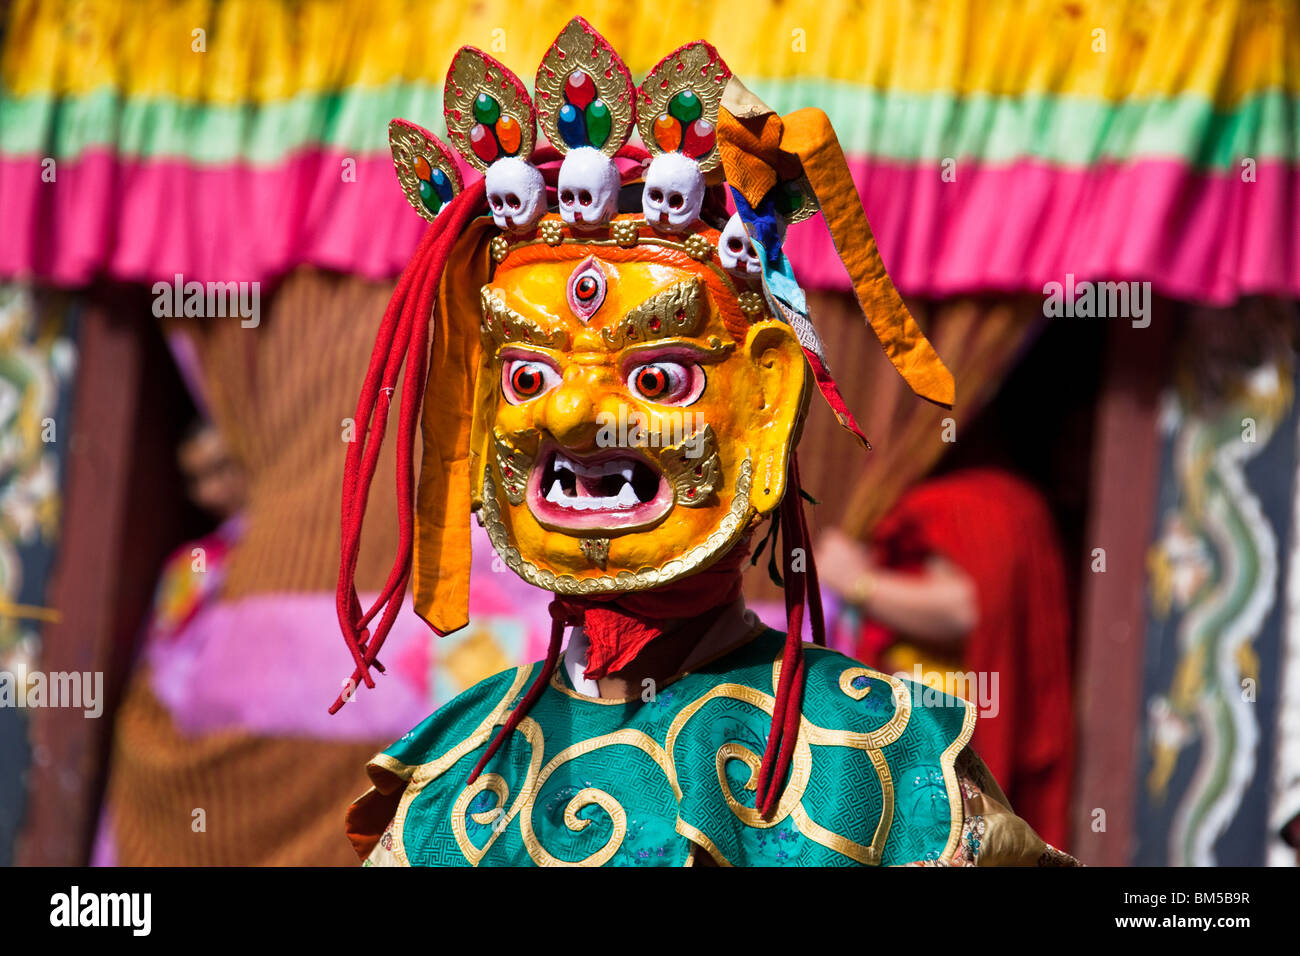 Moine masqué danseuse au festival annuel Tsechu dans l'est du Bhoutan, Trashigang Banque D'Images